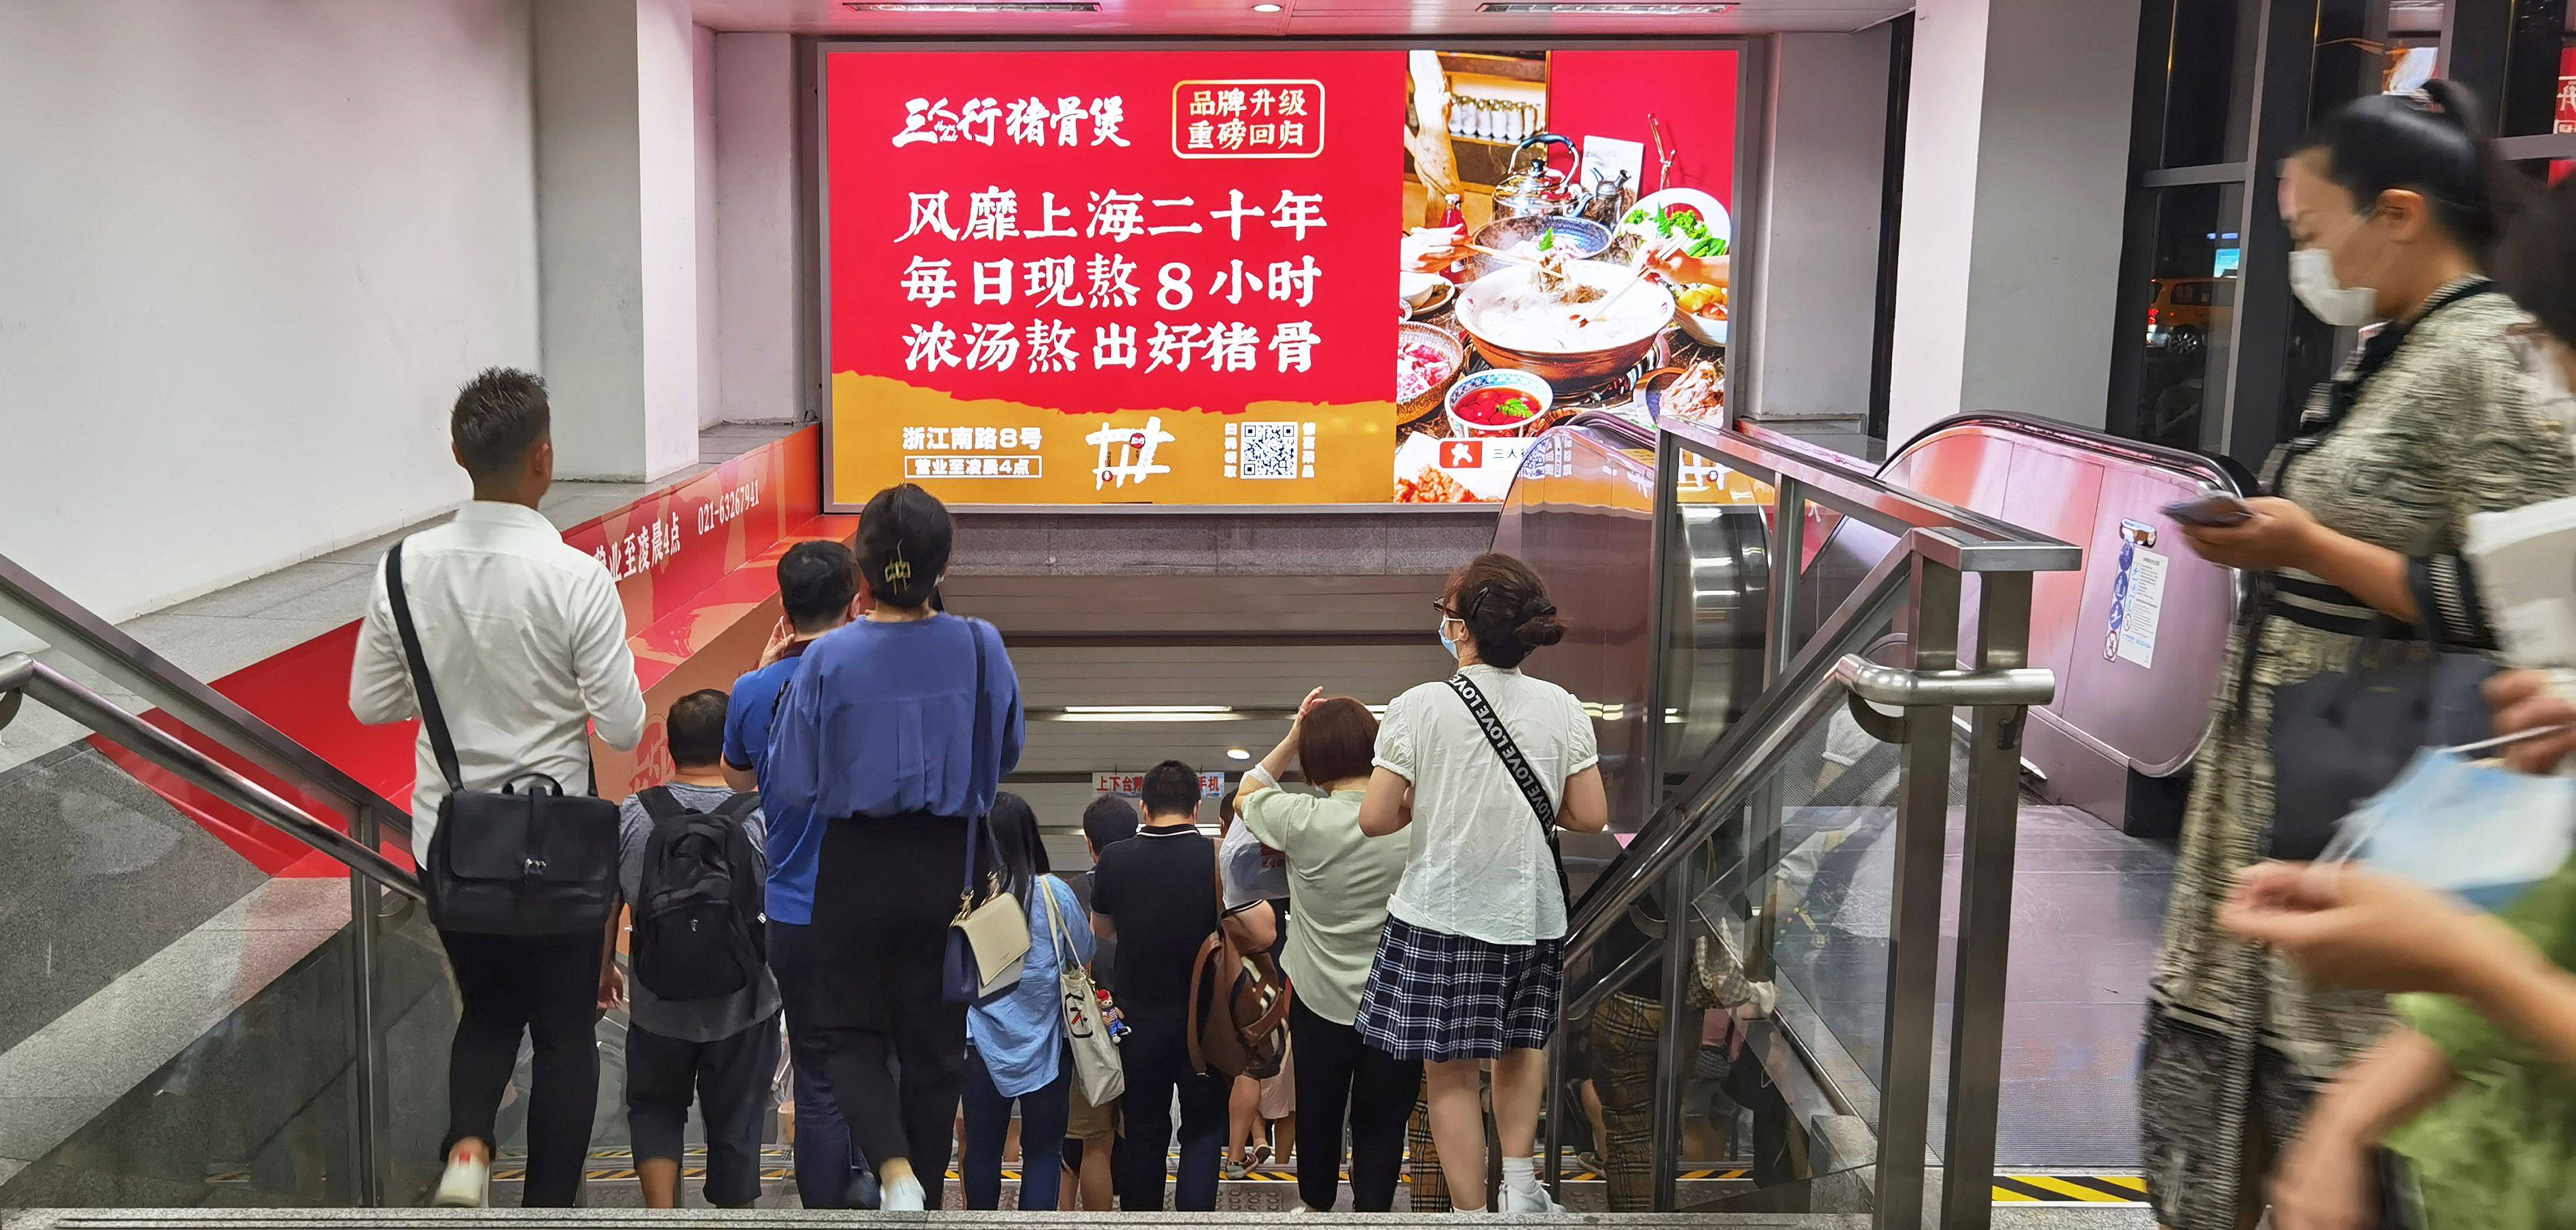 上海静安区全静安区13号线地铁出入口地铁轻轨灯箱